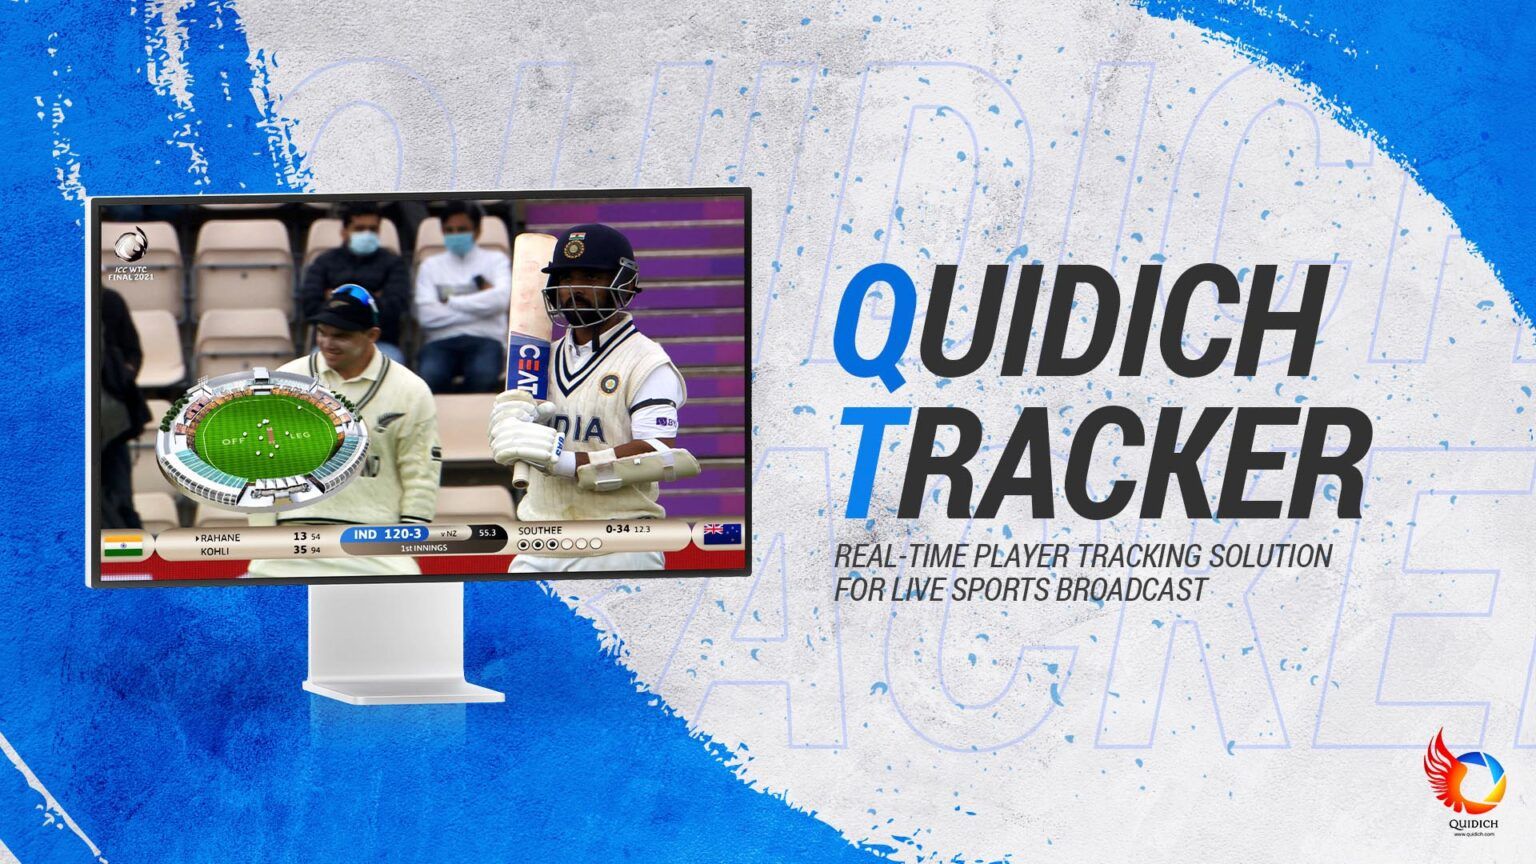 Quidich Tracker